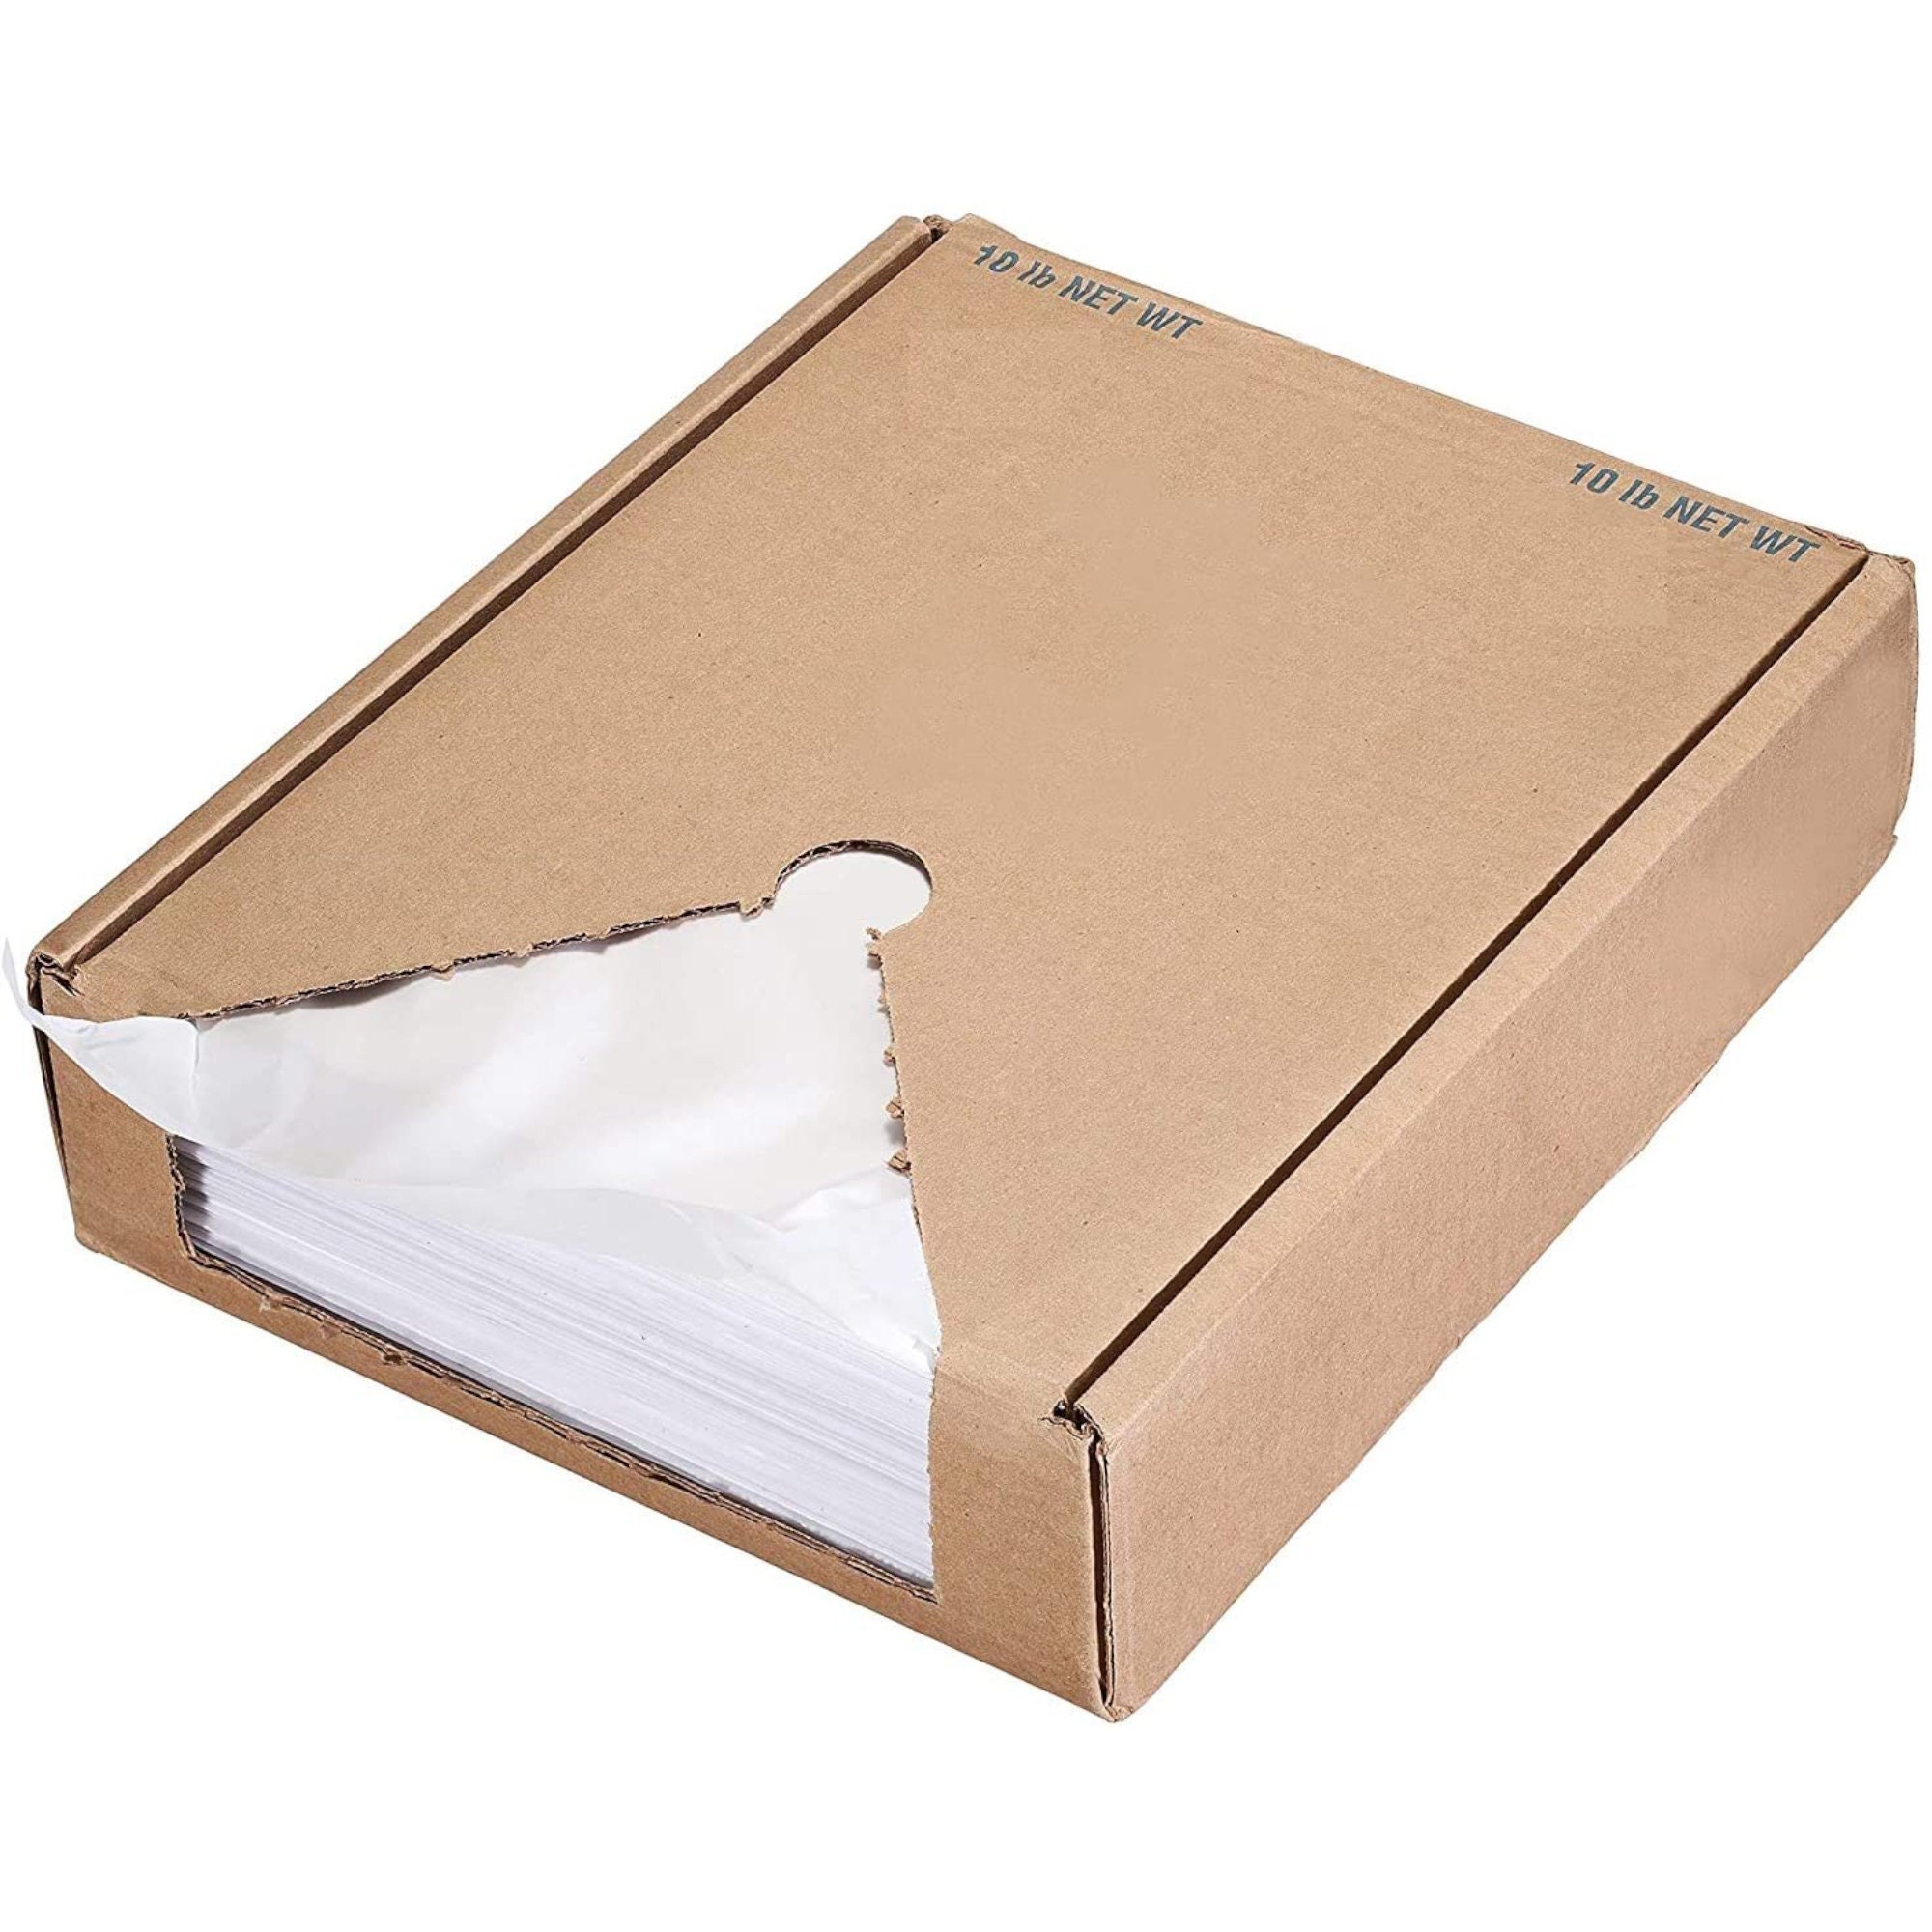 Wax Tissue Paper - Flopak